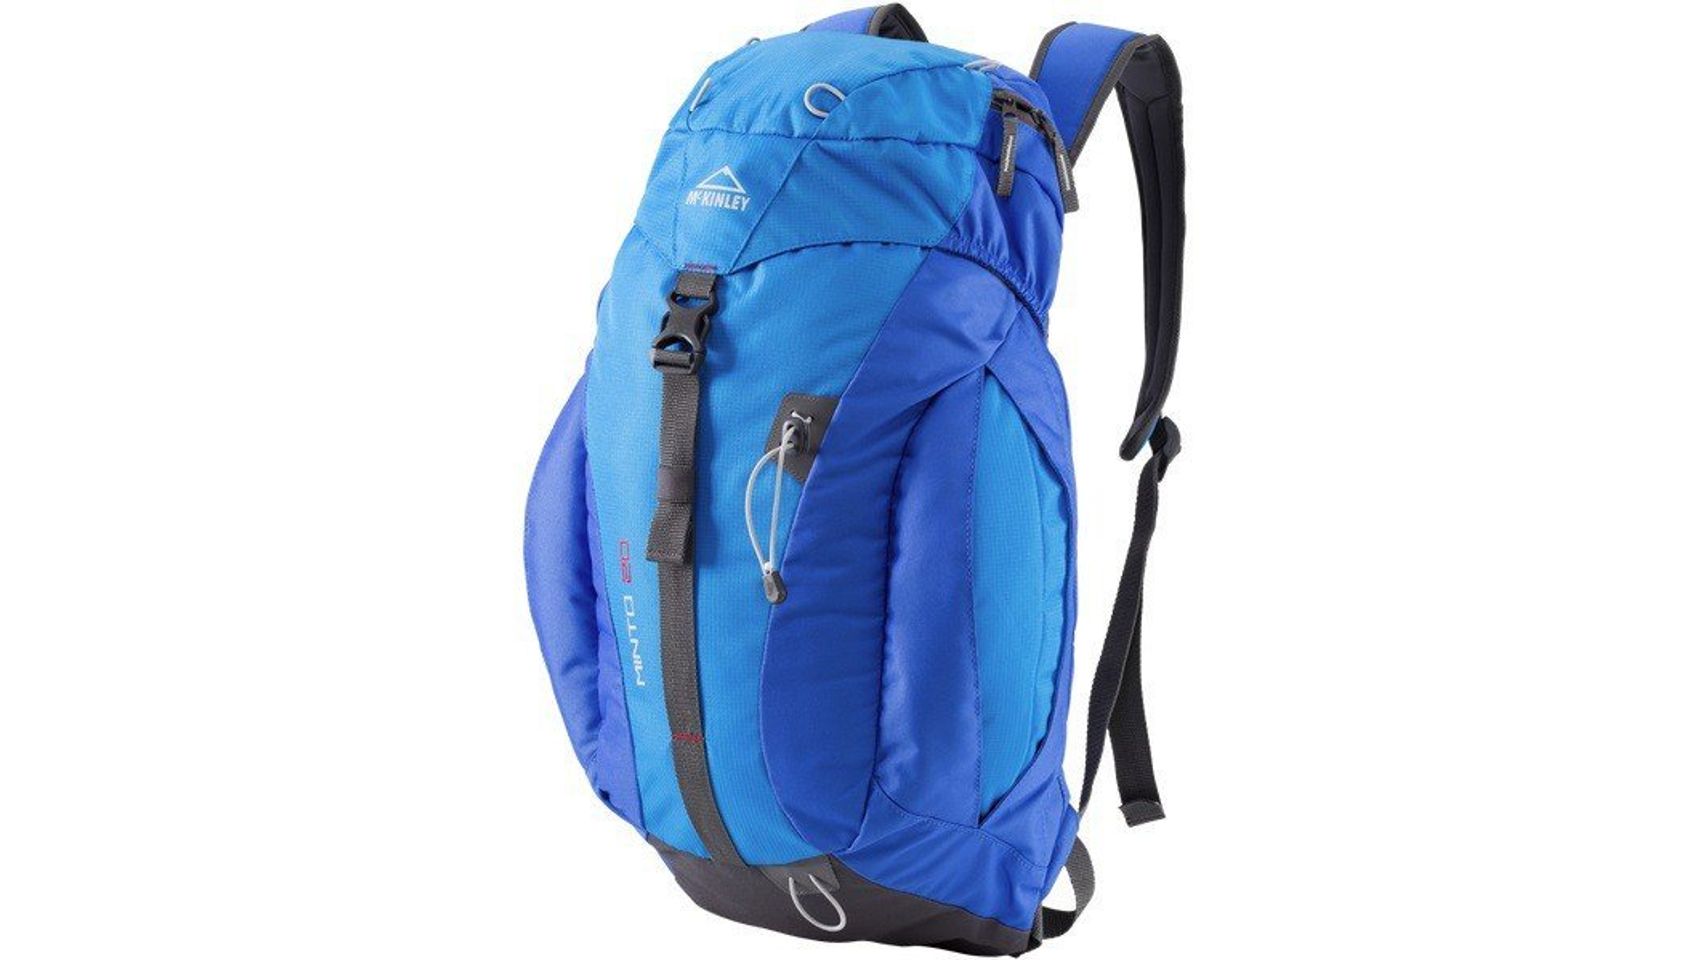 Balo Hiking Backpack Minto 20 giúp bạn đựng được nhiều vật dụng cần thiết cho những chuyến đi